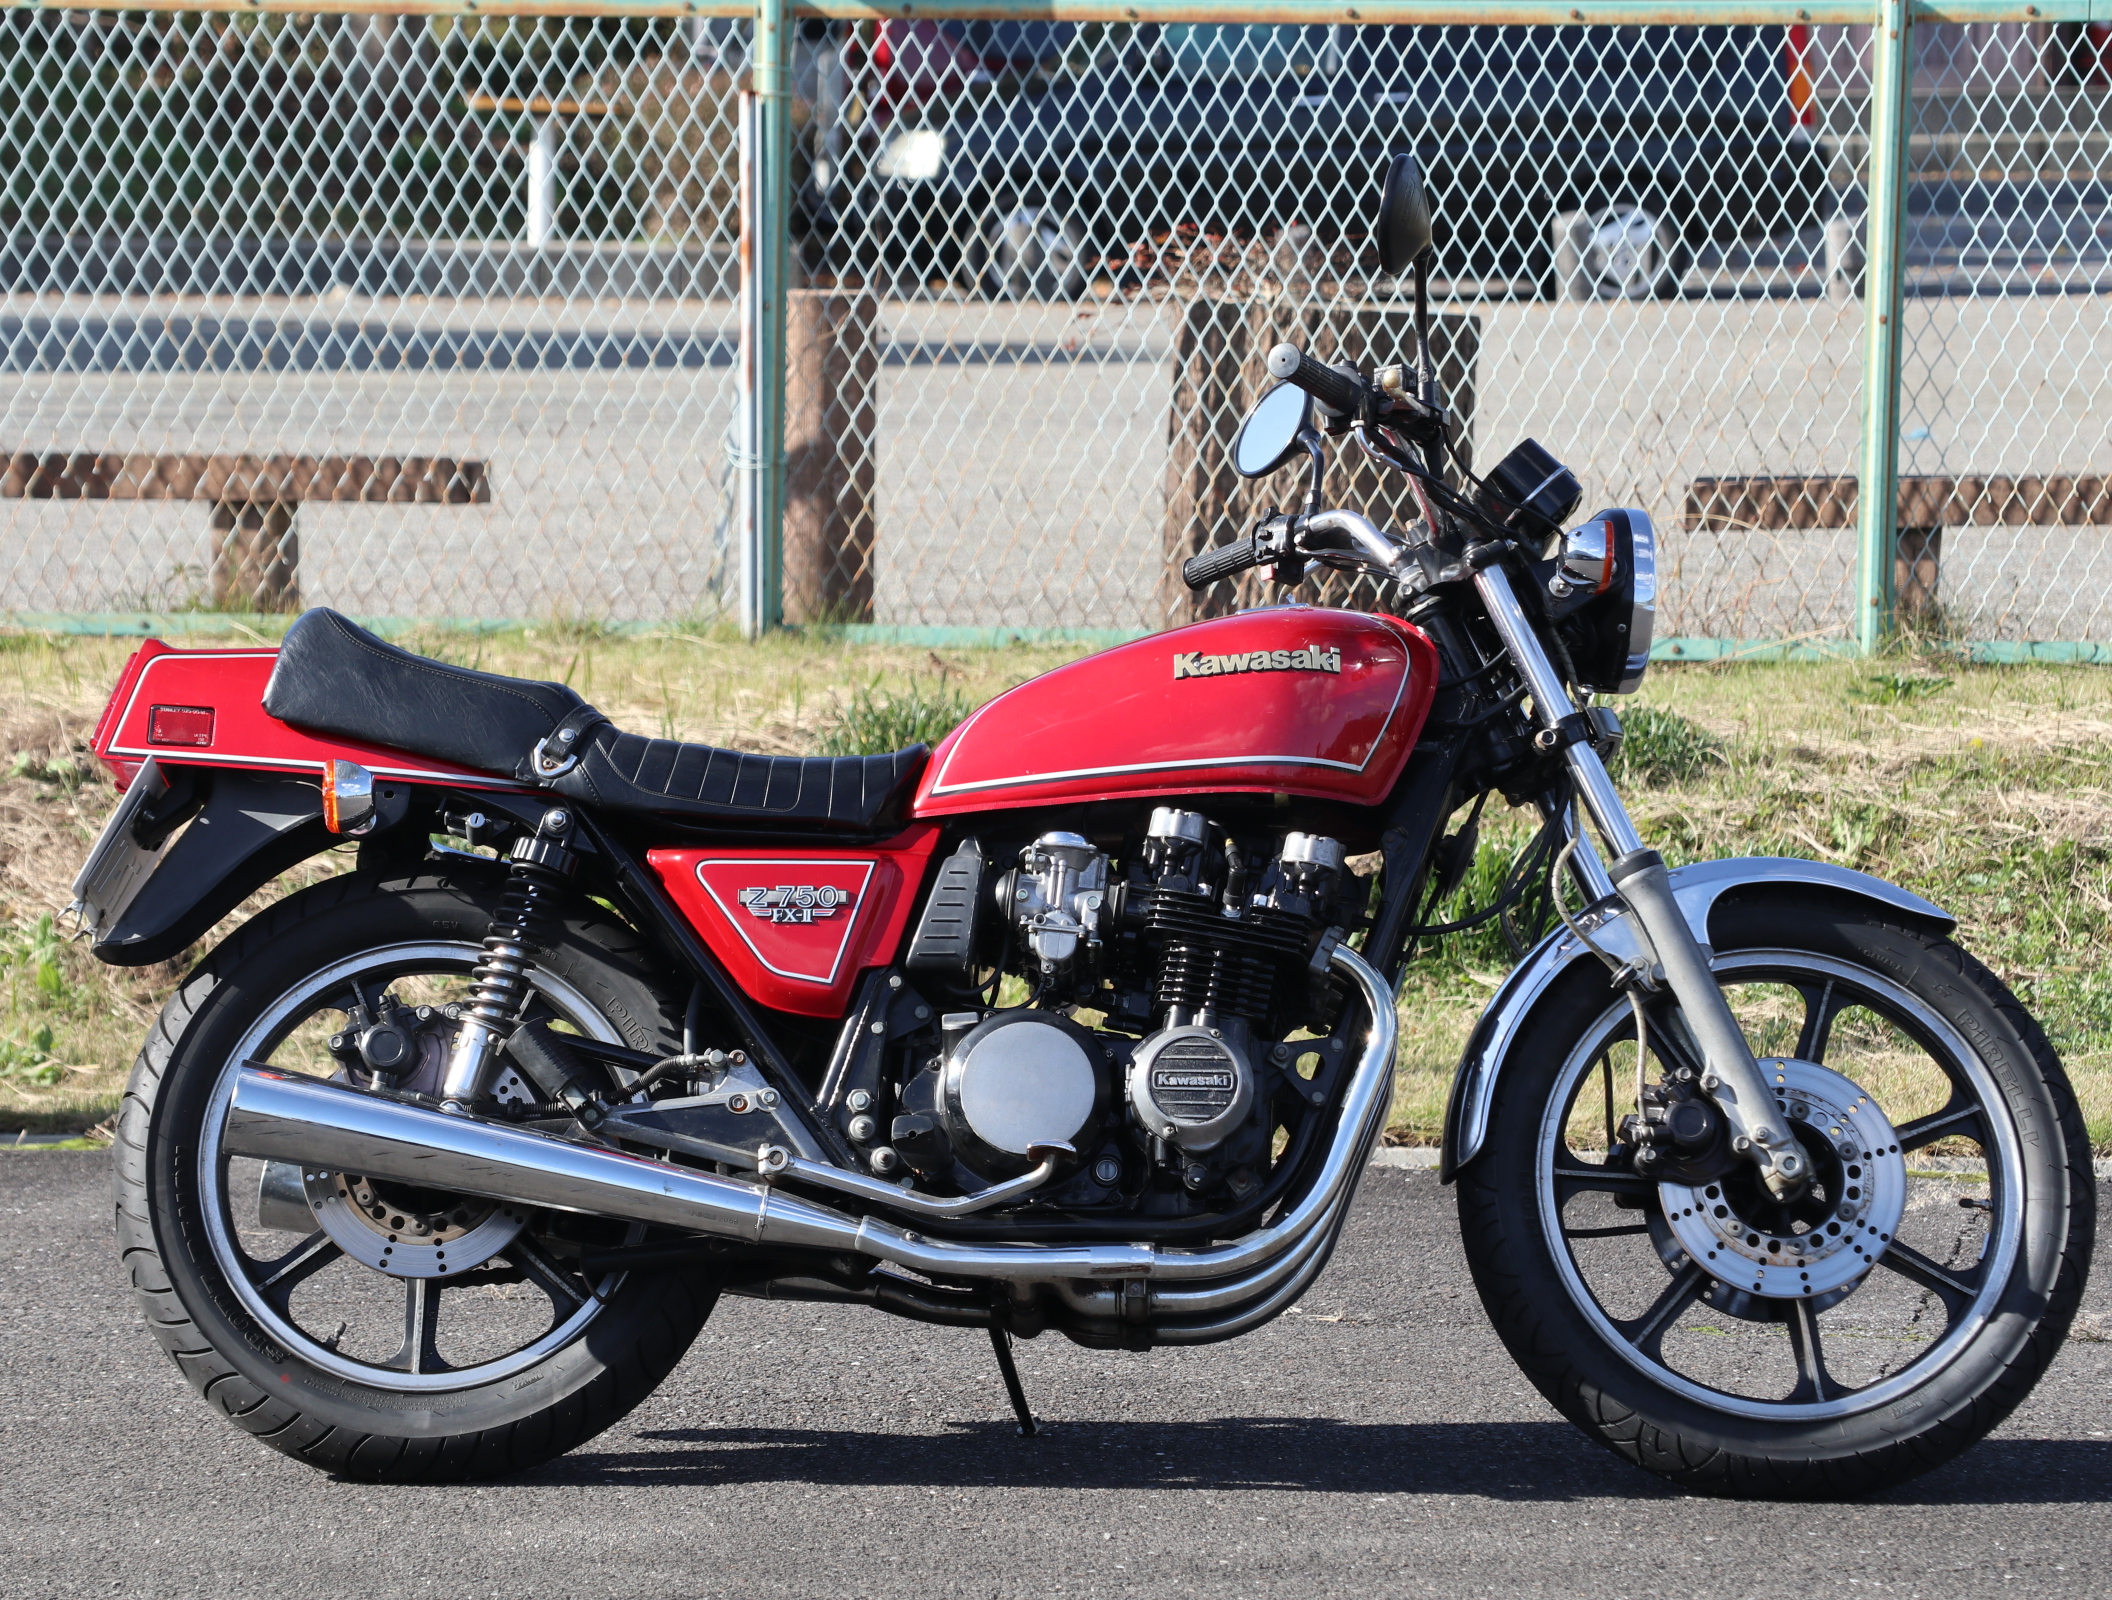 【旧車・バイク】カワサキ Z750FX-Ⅱ 国内物！ | VRP｜岐阜の機械設計会社です。旧車・バイク販売も展開中